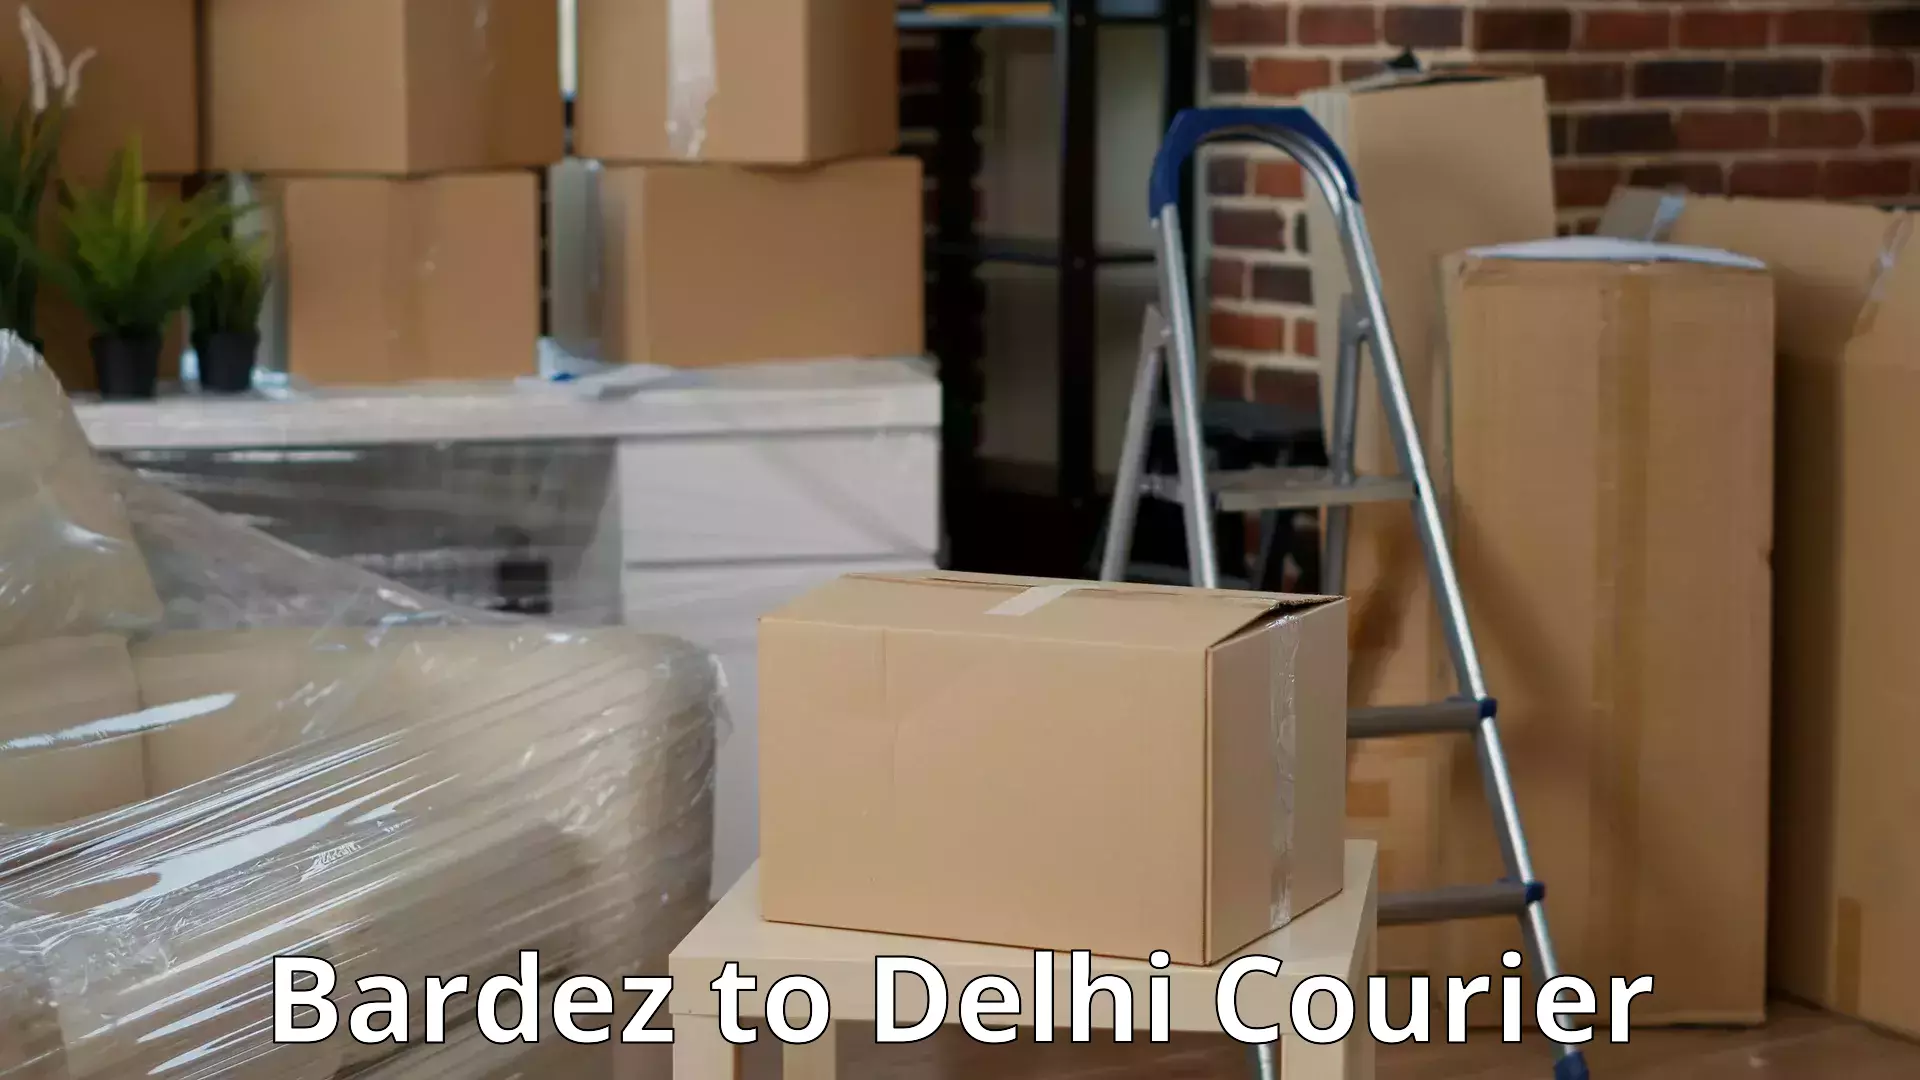 Household goods transporters Bardez to East Delhi